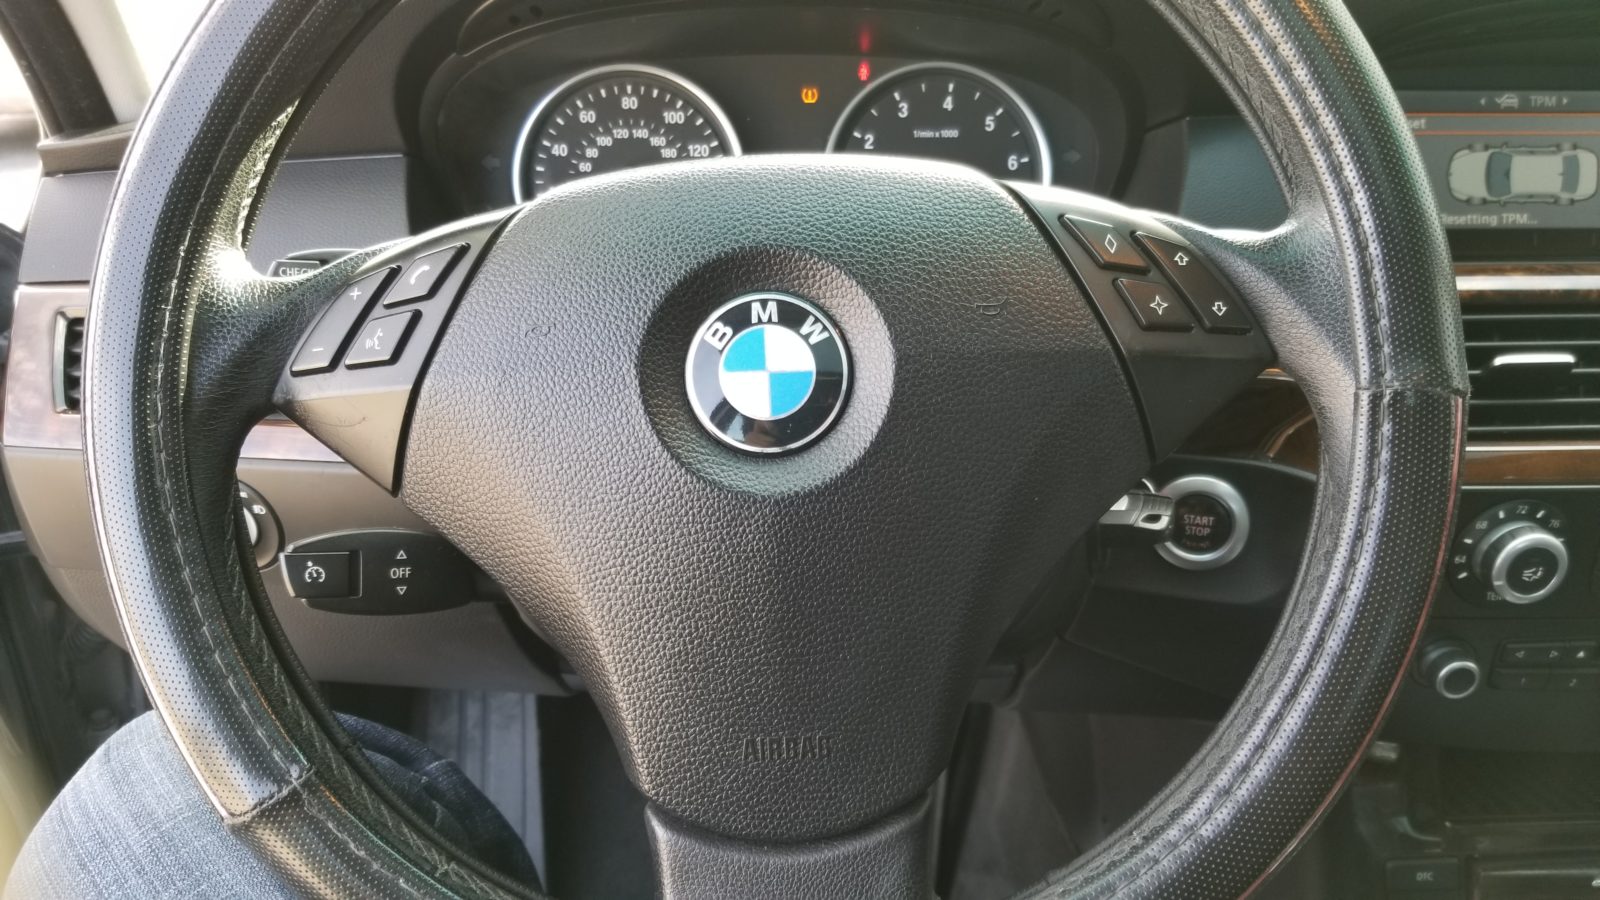 2008 BMW 528i